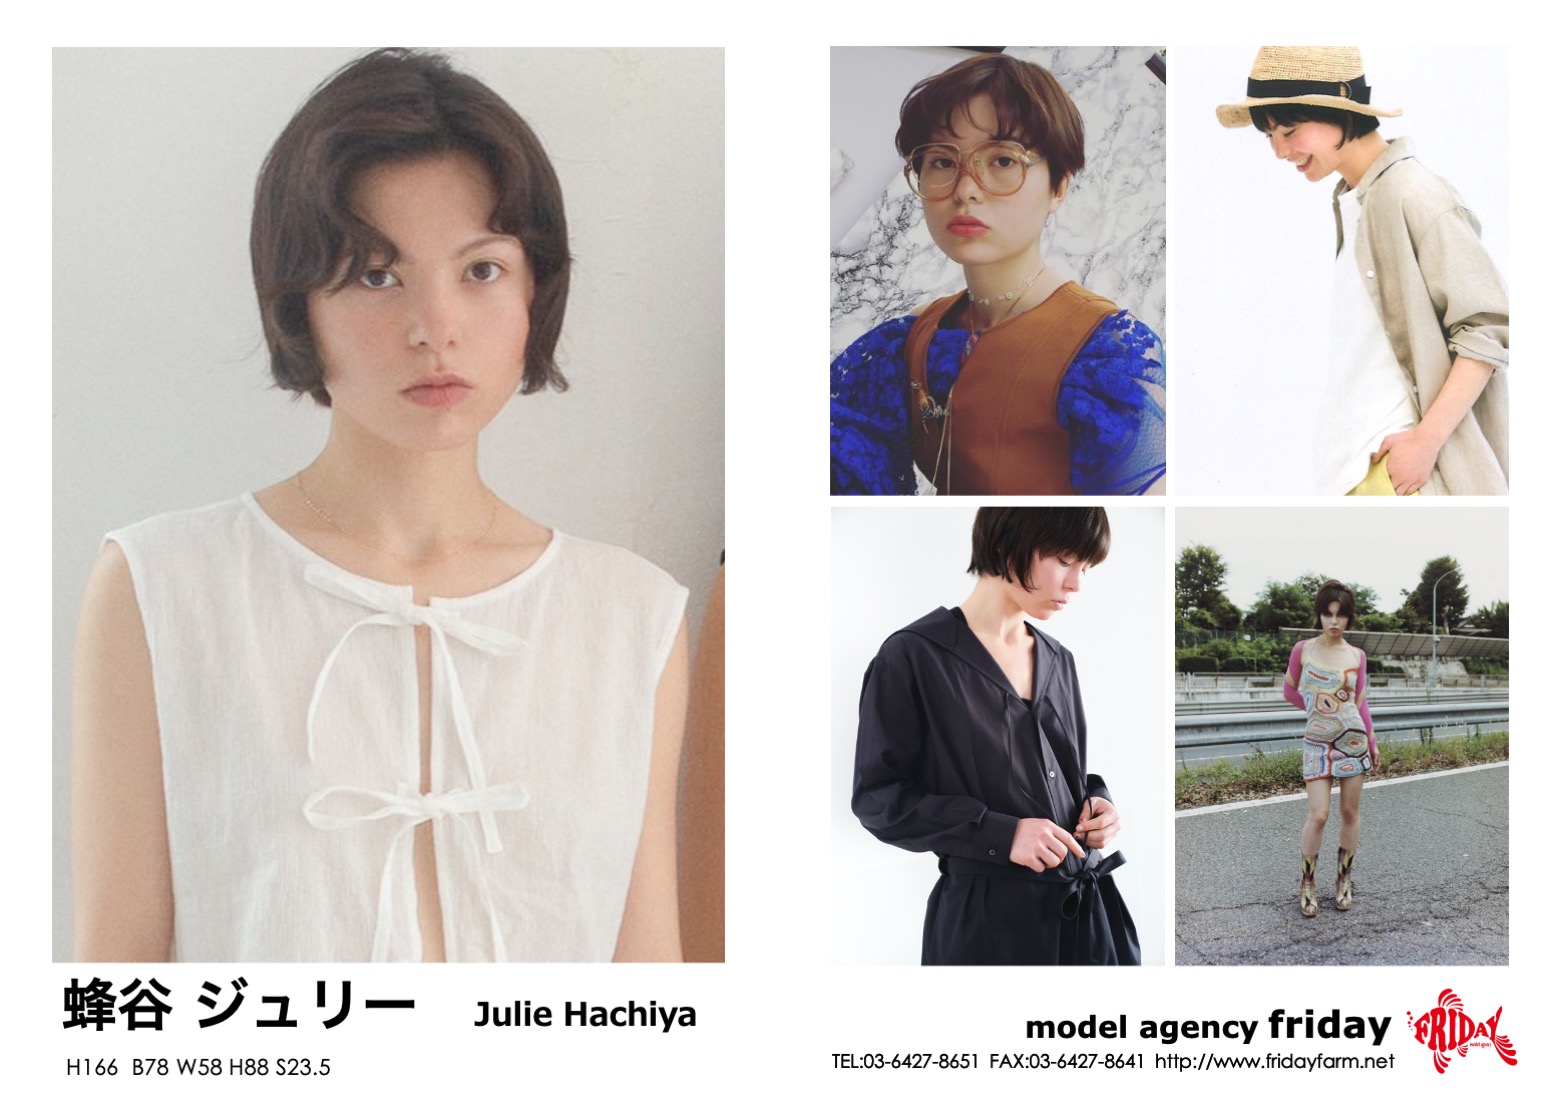 蜂谷 ジュリー - Julie Hachiya | model agency friday